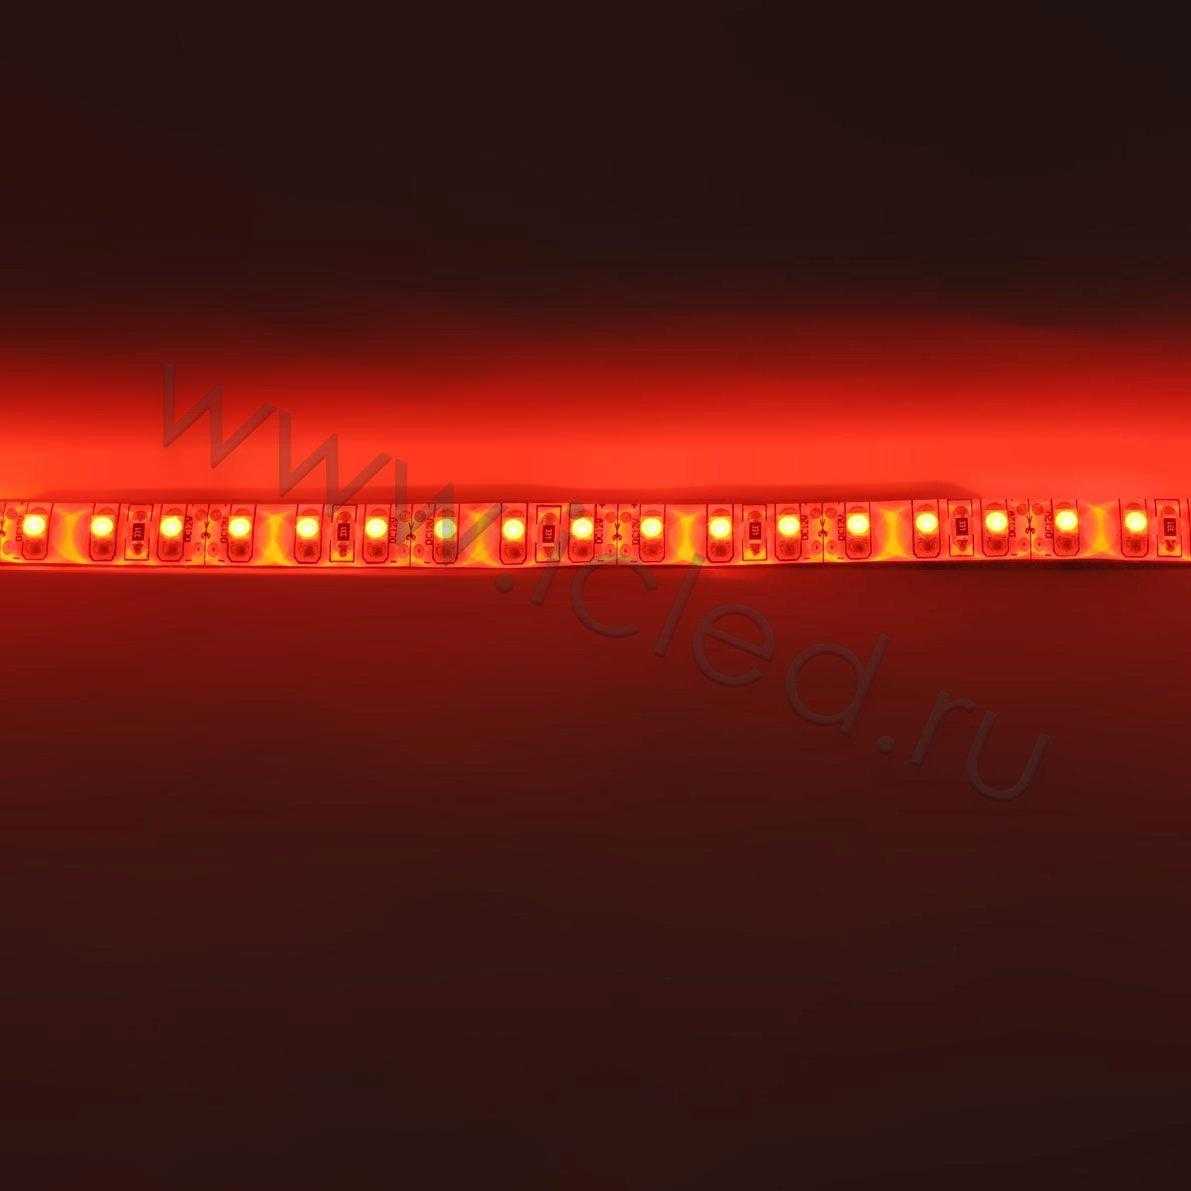 Влагозащищенные светодиодные ленты Светодиодная лента Standart PRO class, 3528, 120 led/m, Red, 12V, IP65 Icled